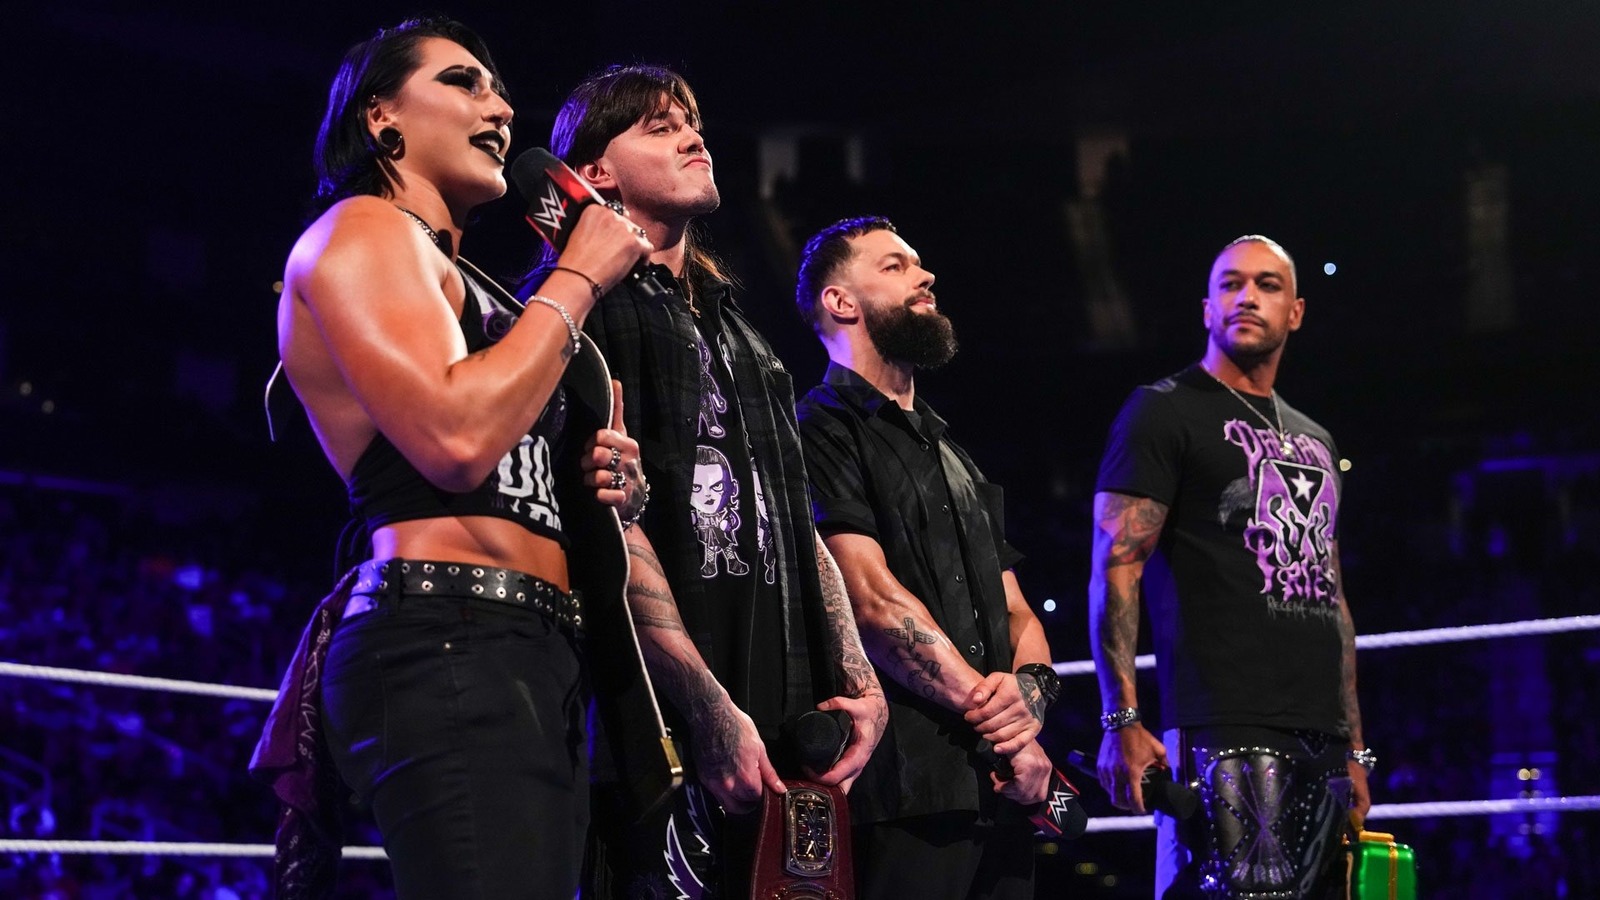 Audiencia y calificaciones bajas para el WWE Raw final antes de SummerSlam